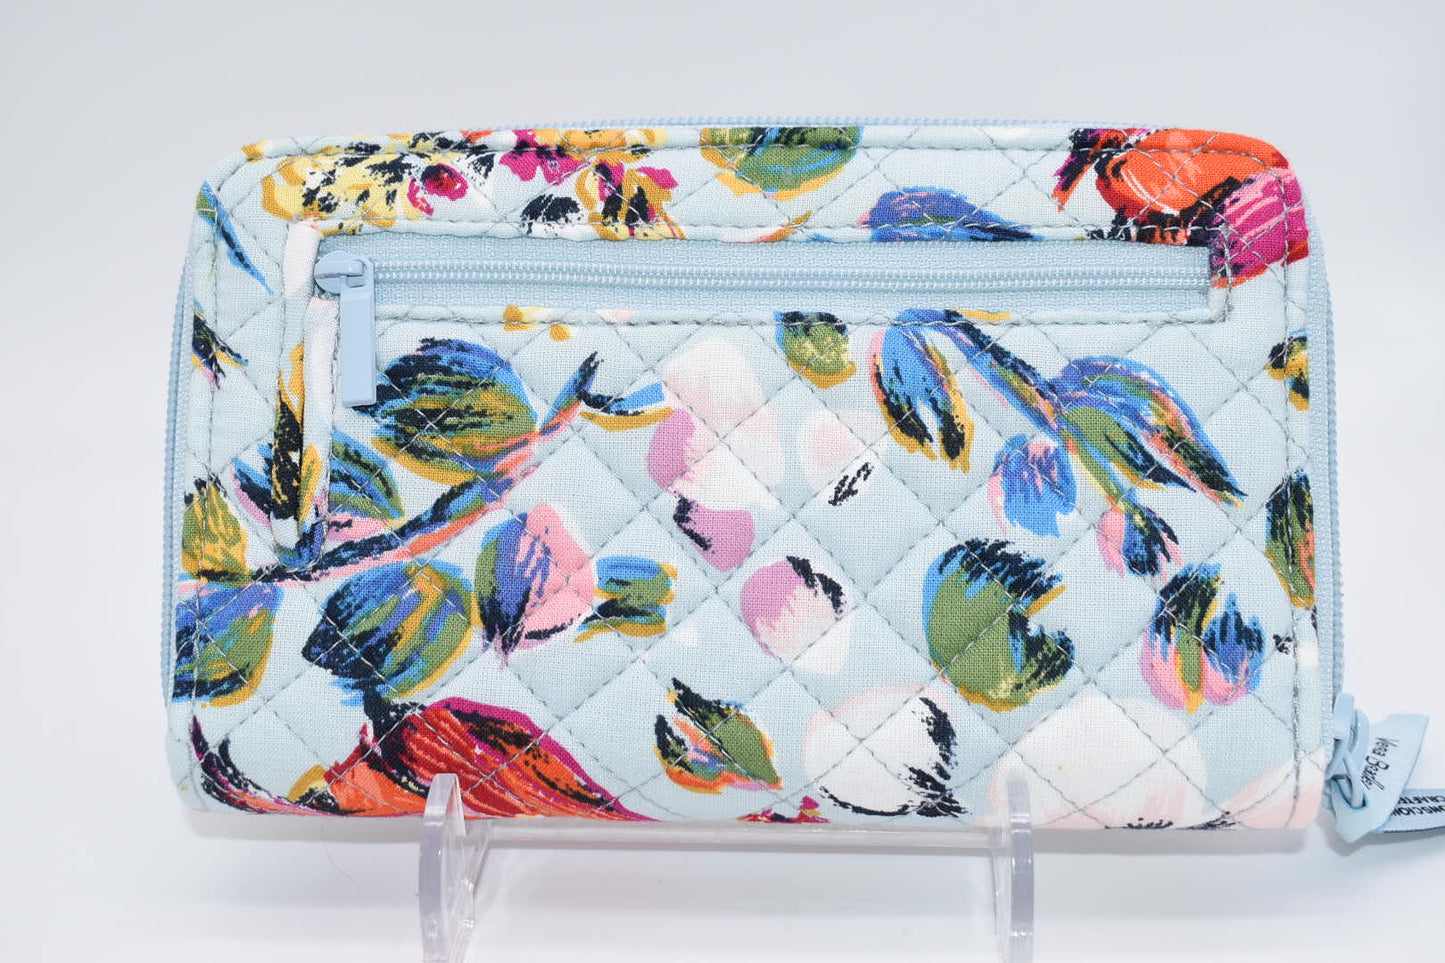 Vera Bradley RFID Turnlock Wallet in "Sea Air Floral" Pattern